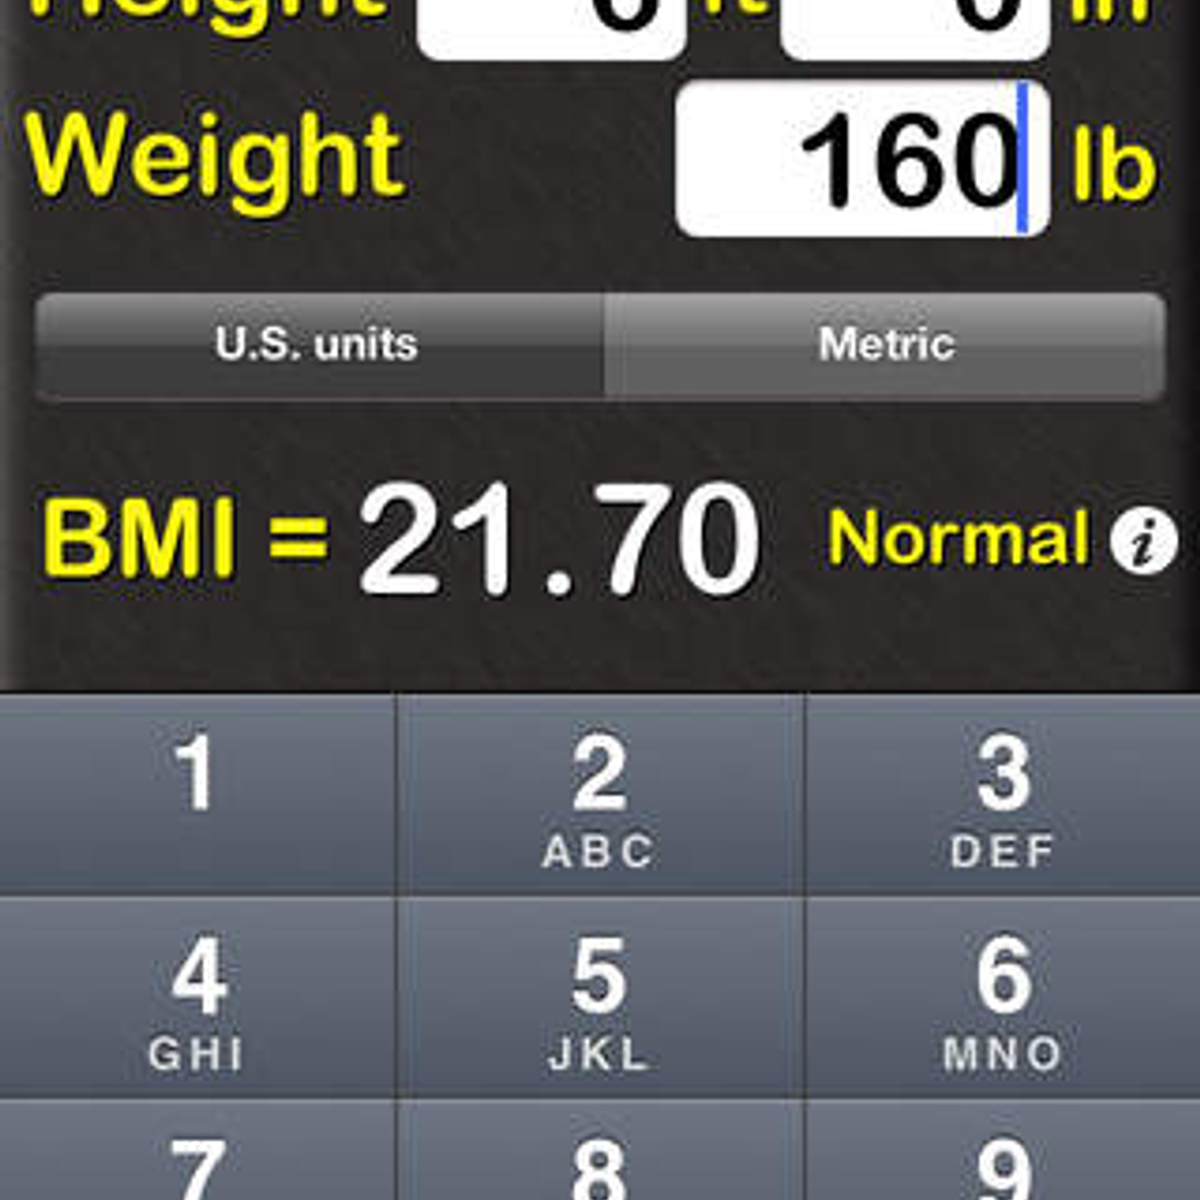 BMI Calculator‰ Alternatives and Similar Apps - AlternativeTo.net